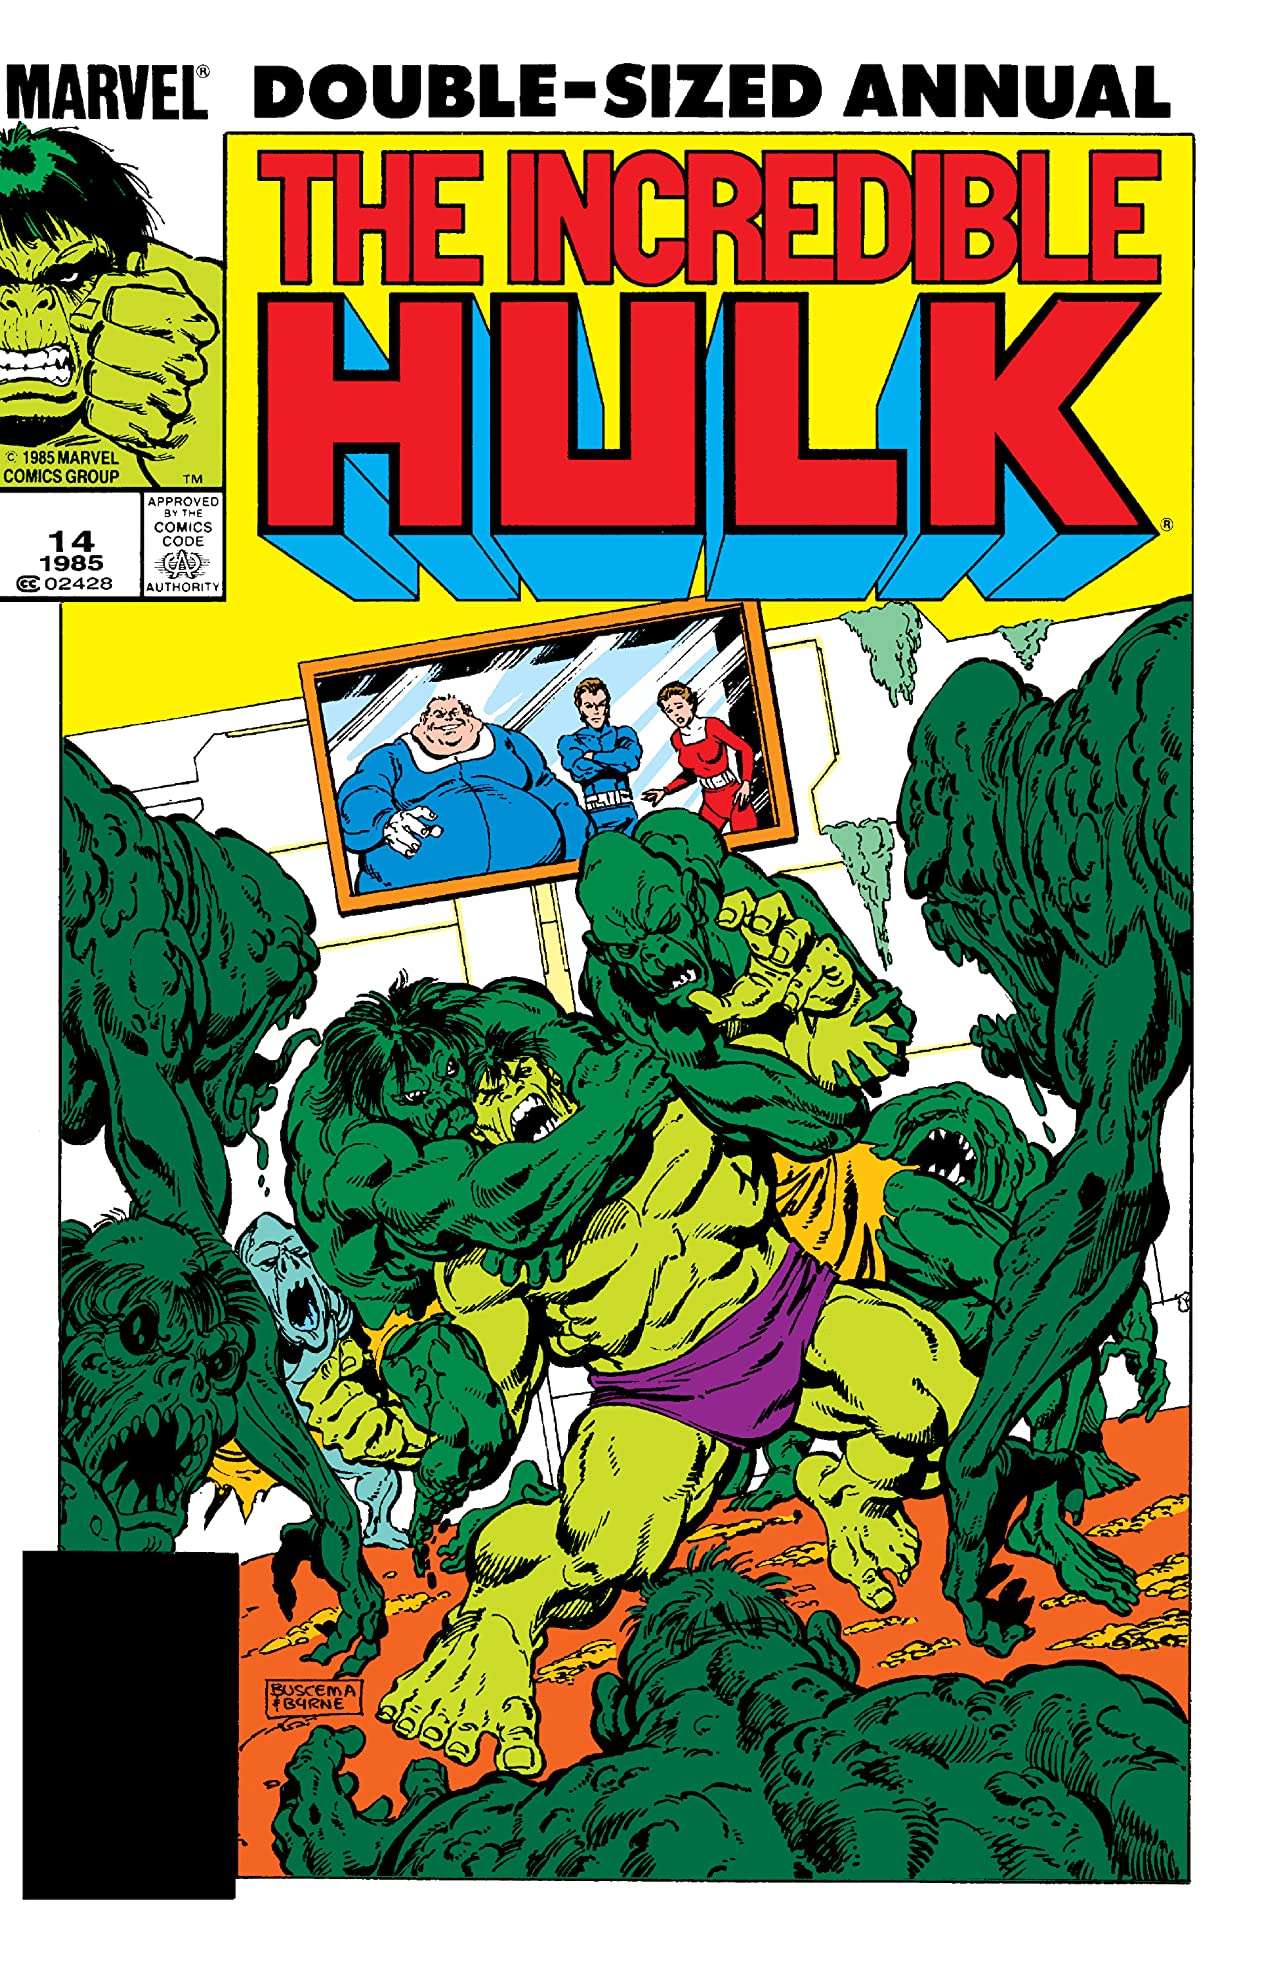 The Incredible Hulk #14 Annual